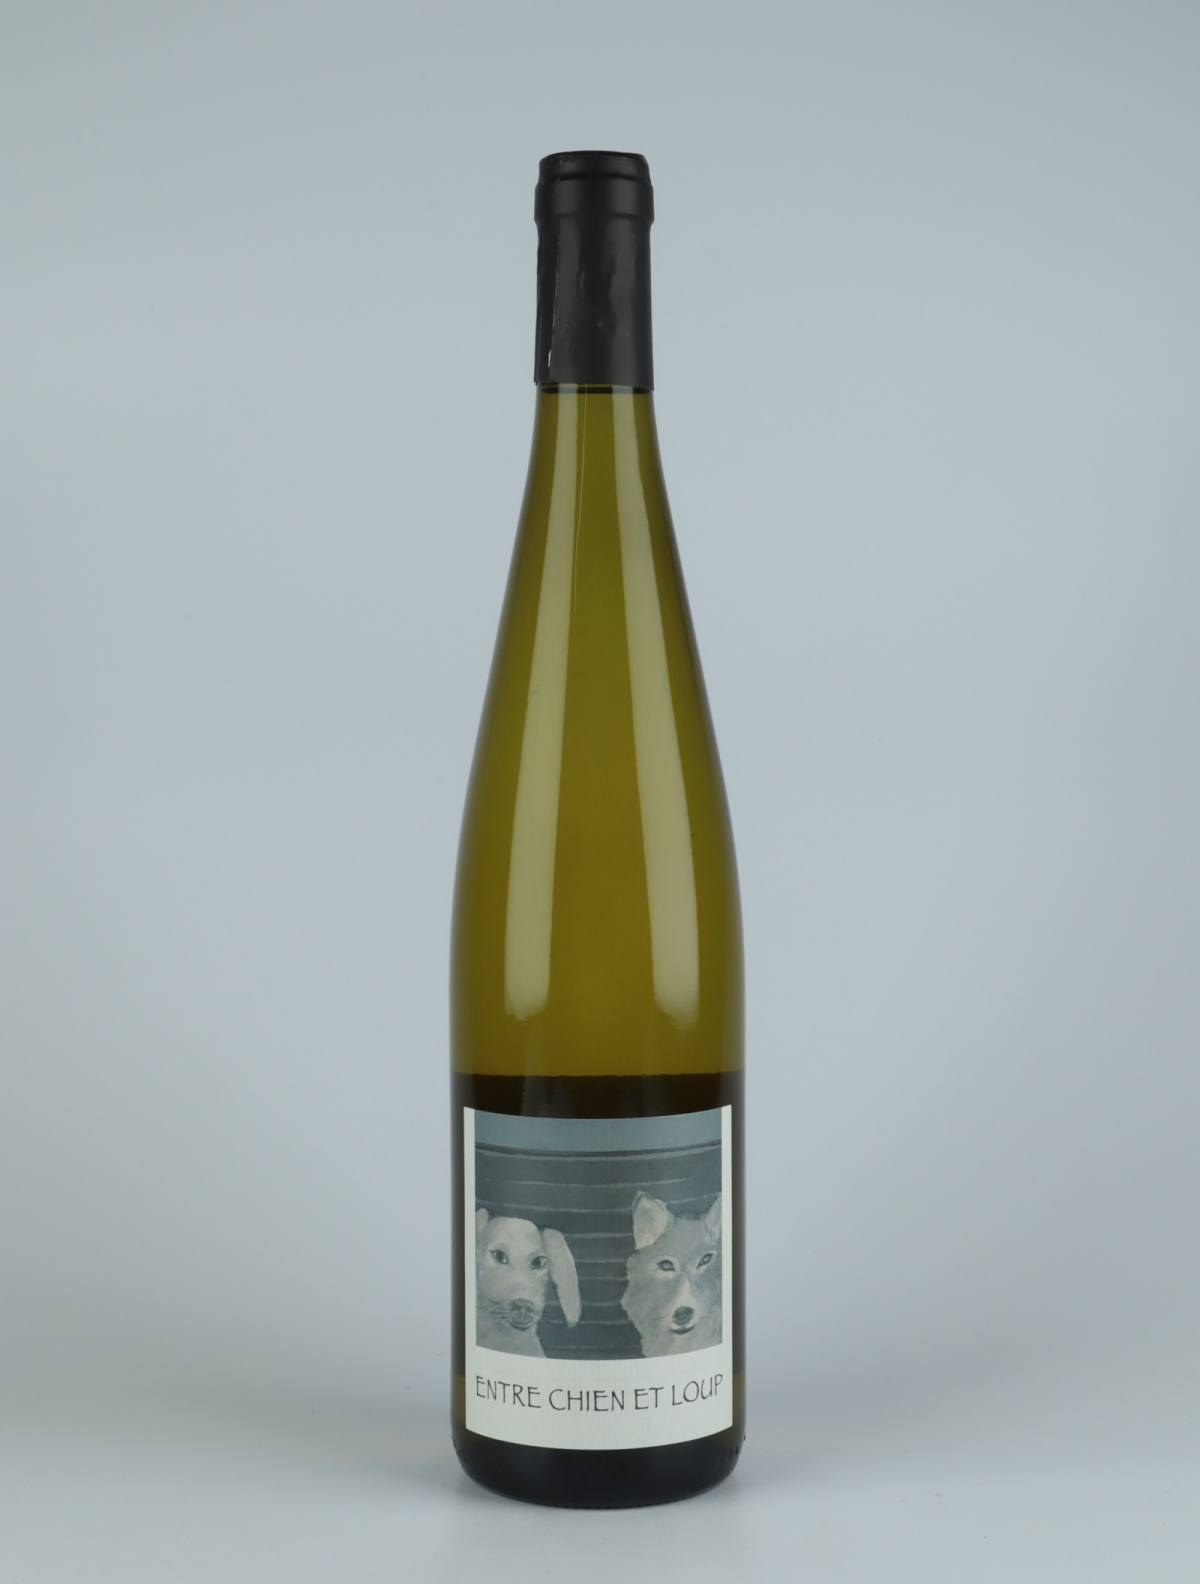 En flaske 2020 Entre Chien et Loup Hvidvin fra Domaine Rietsch, Alsace i Frankrig